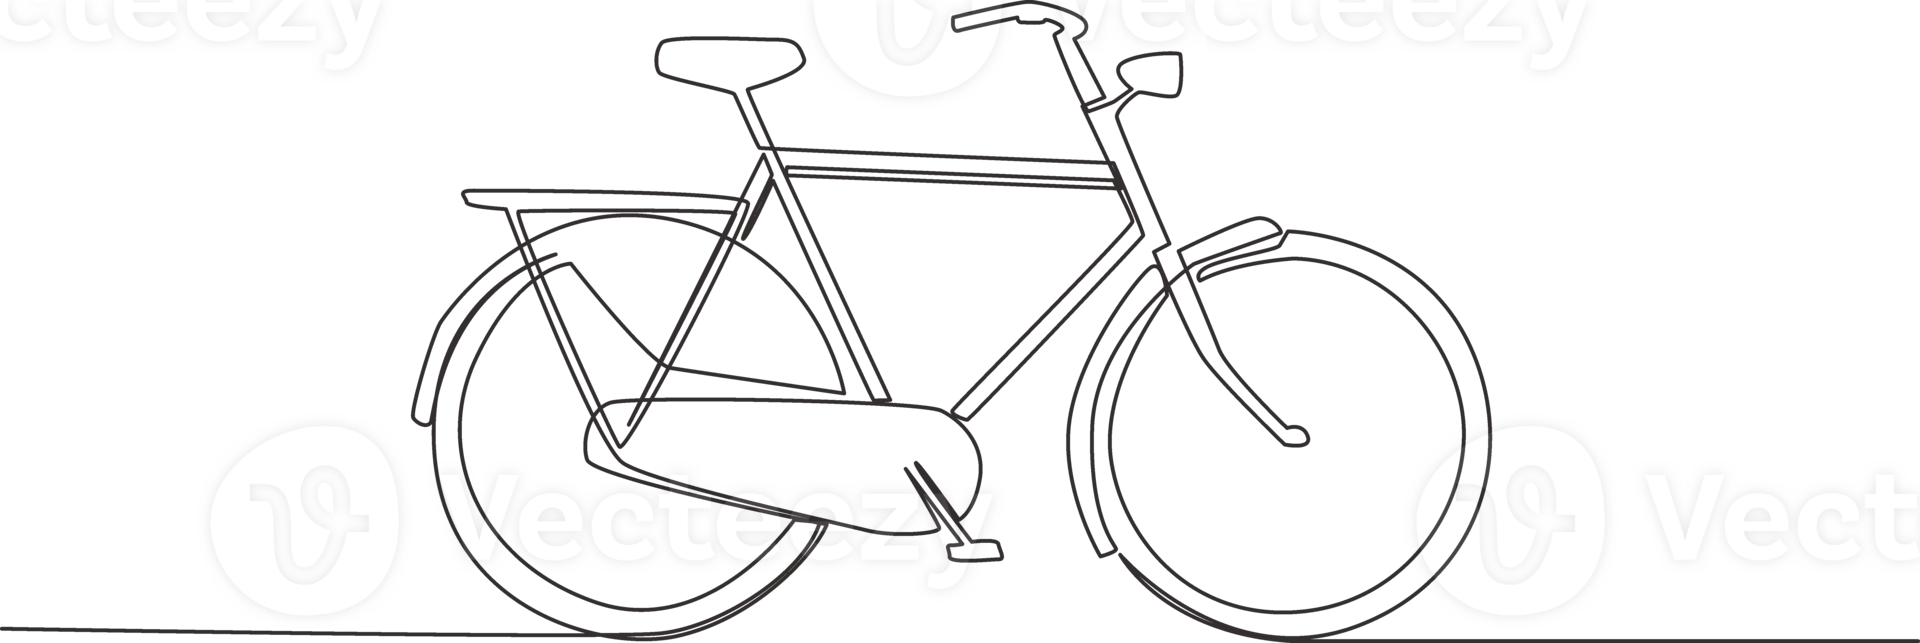 single doorlopend lijn tekening van oud klassiek roadster fiets. wijnoogst fiets concept. een lijn trek ontwerp illustratie png